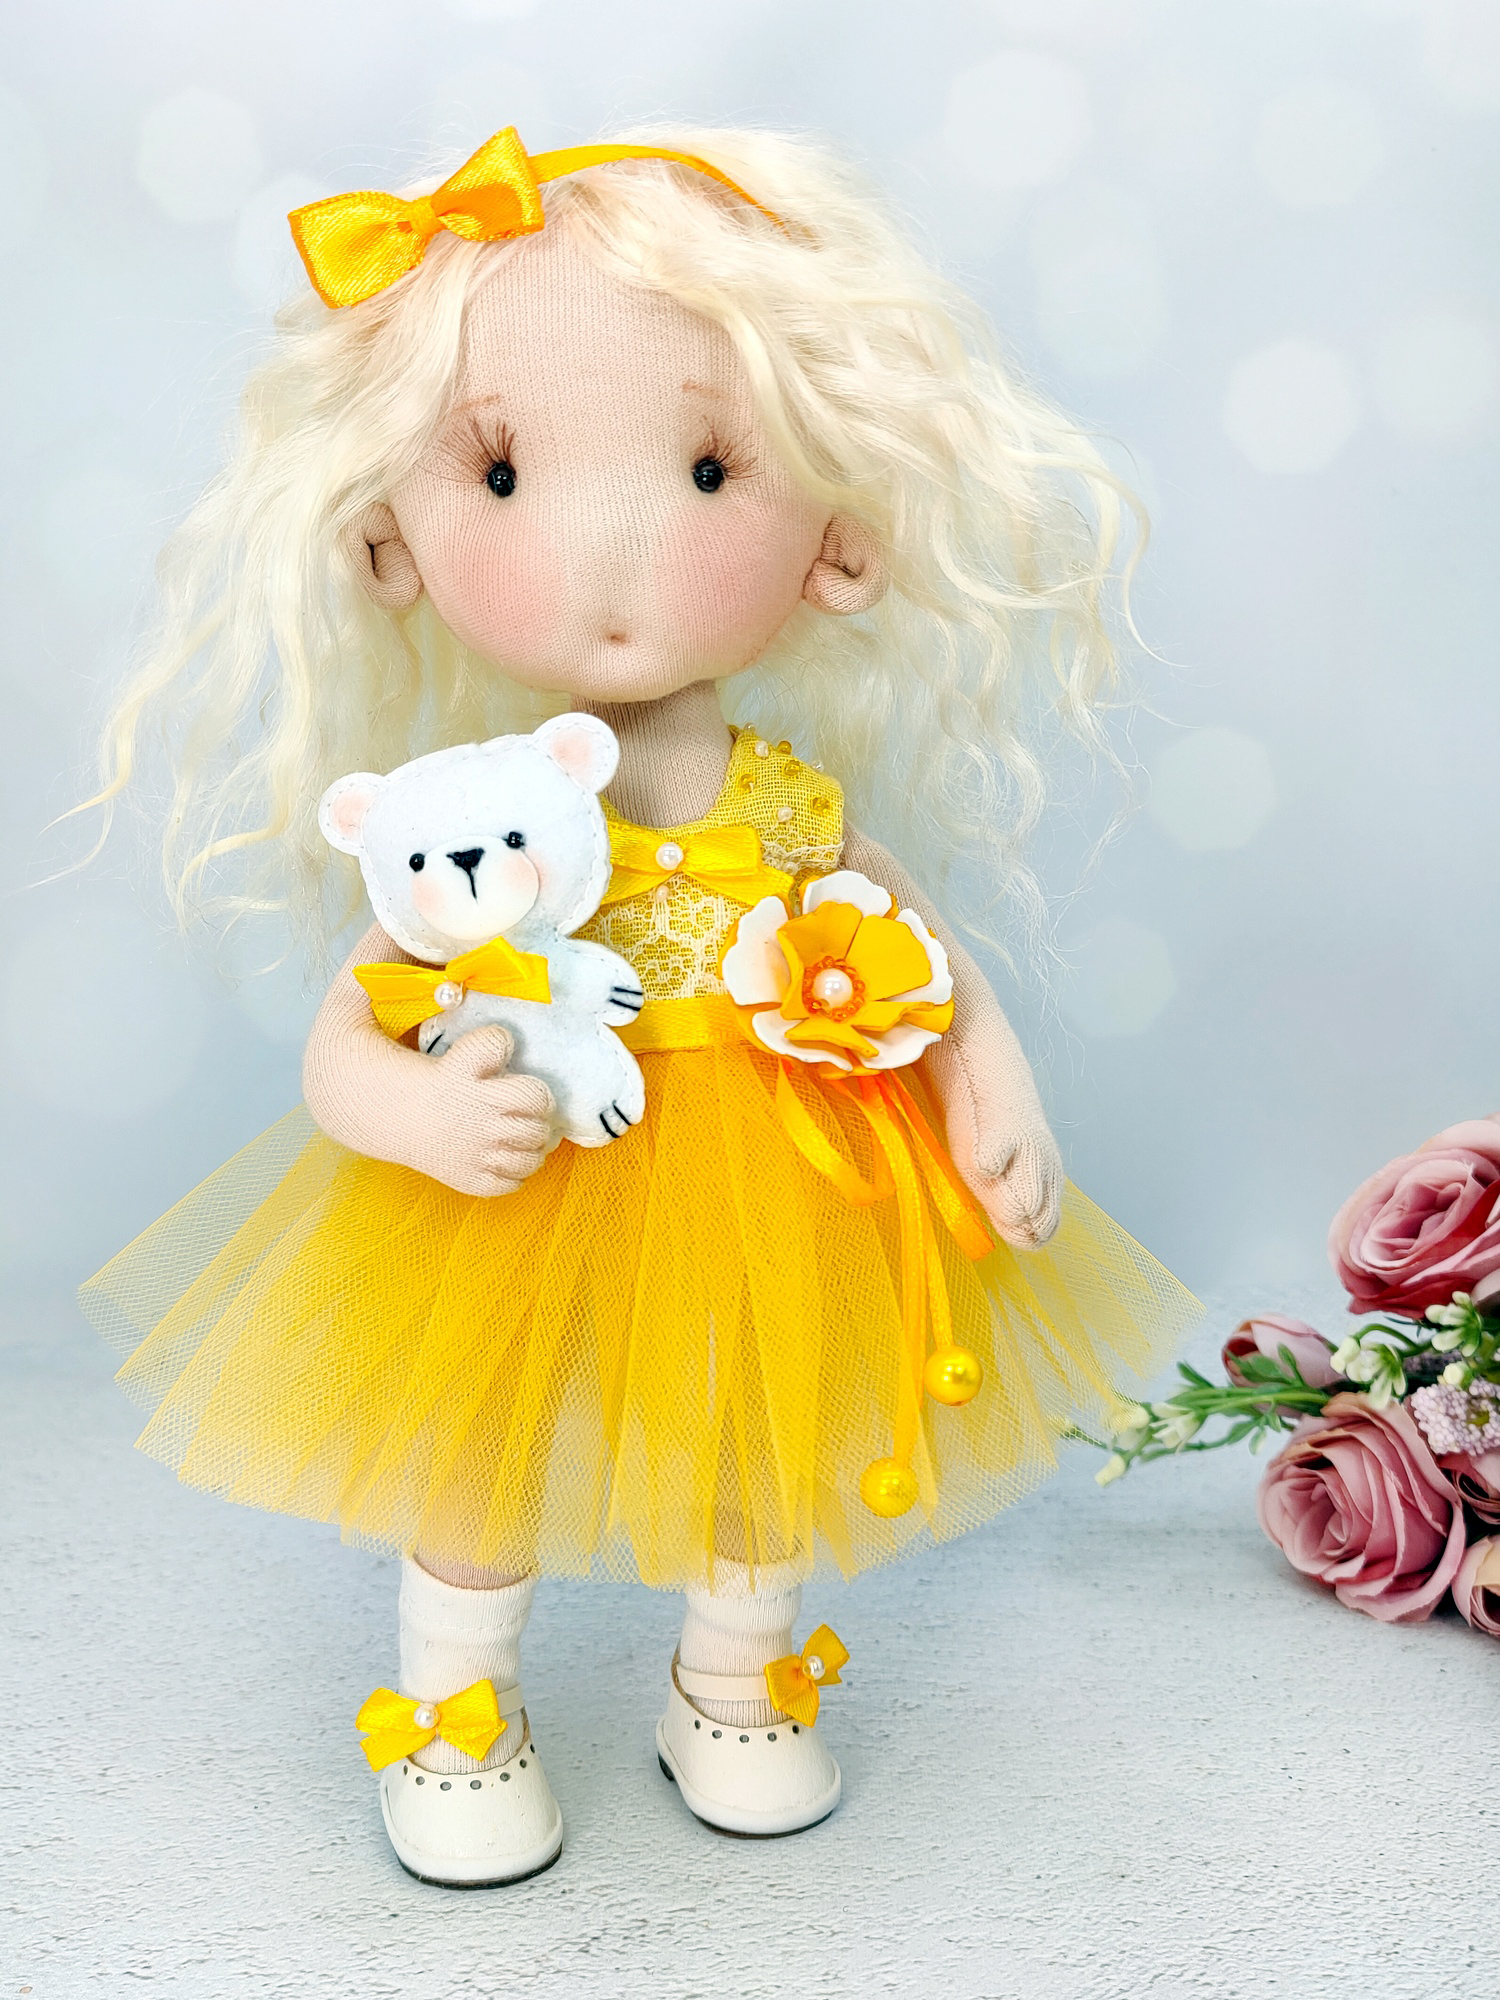 Набор для шитья Куклы-домики кукла Бусинка, Желтый, мягкая текстильная щекастик